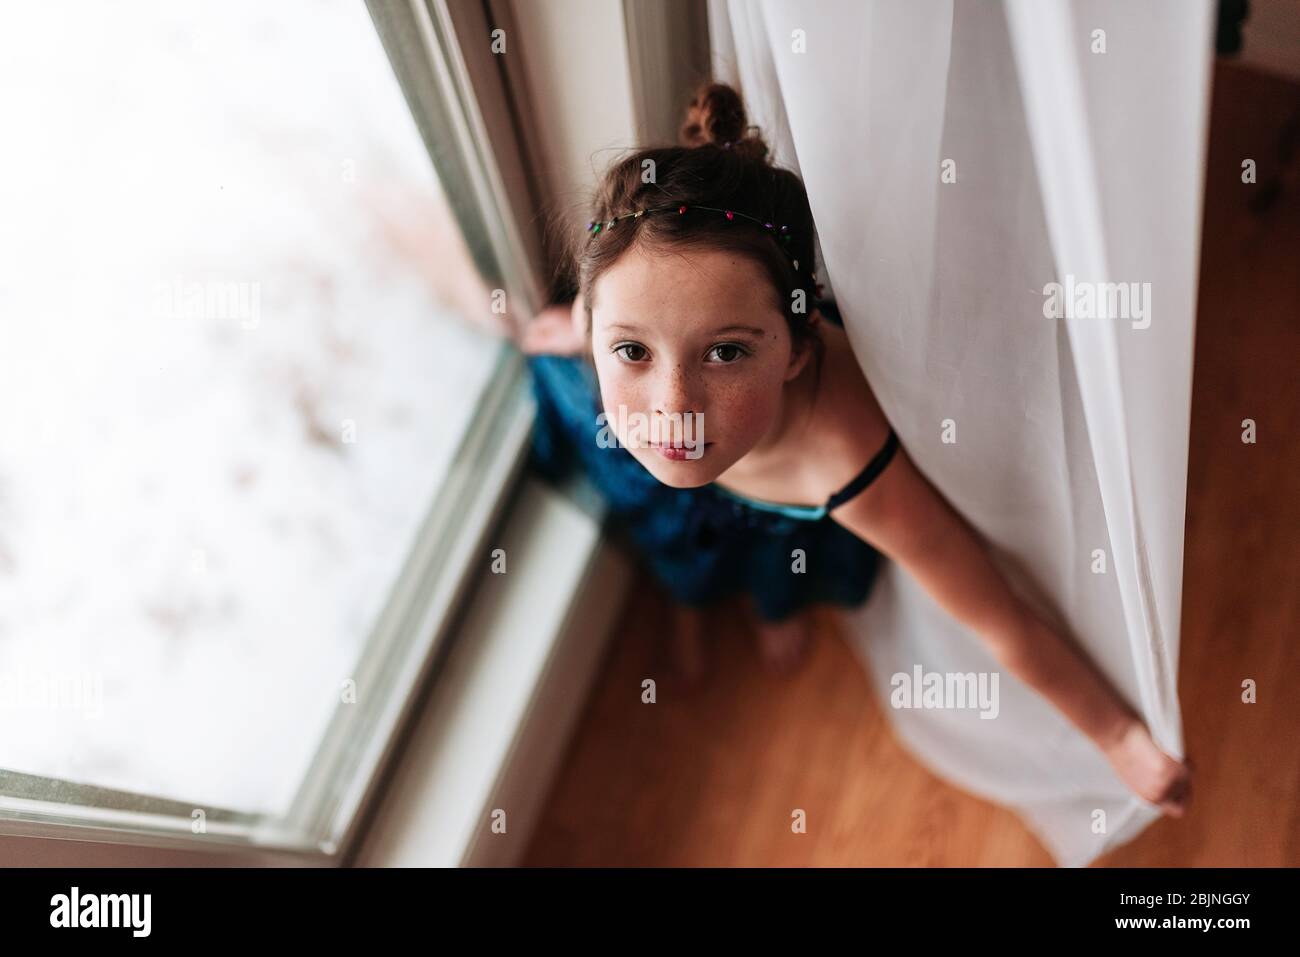 Vue de dessus d'une fille debout près d'une fenêtre Banque D'Images